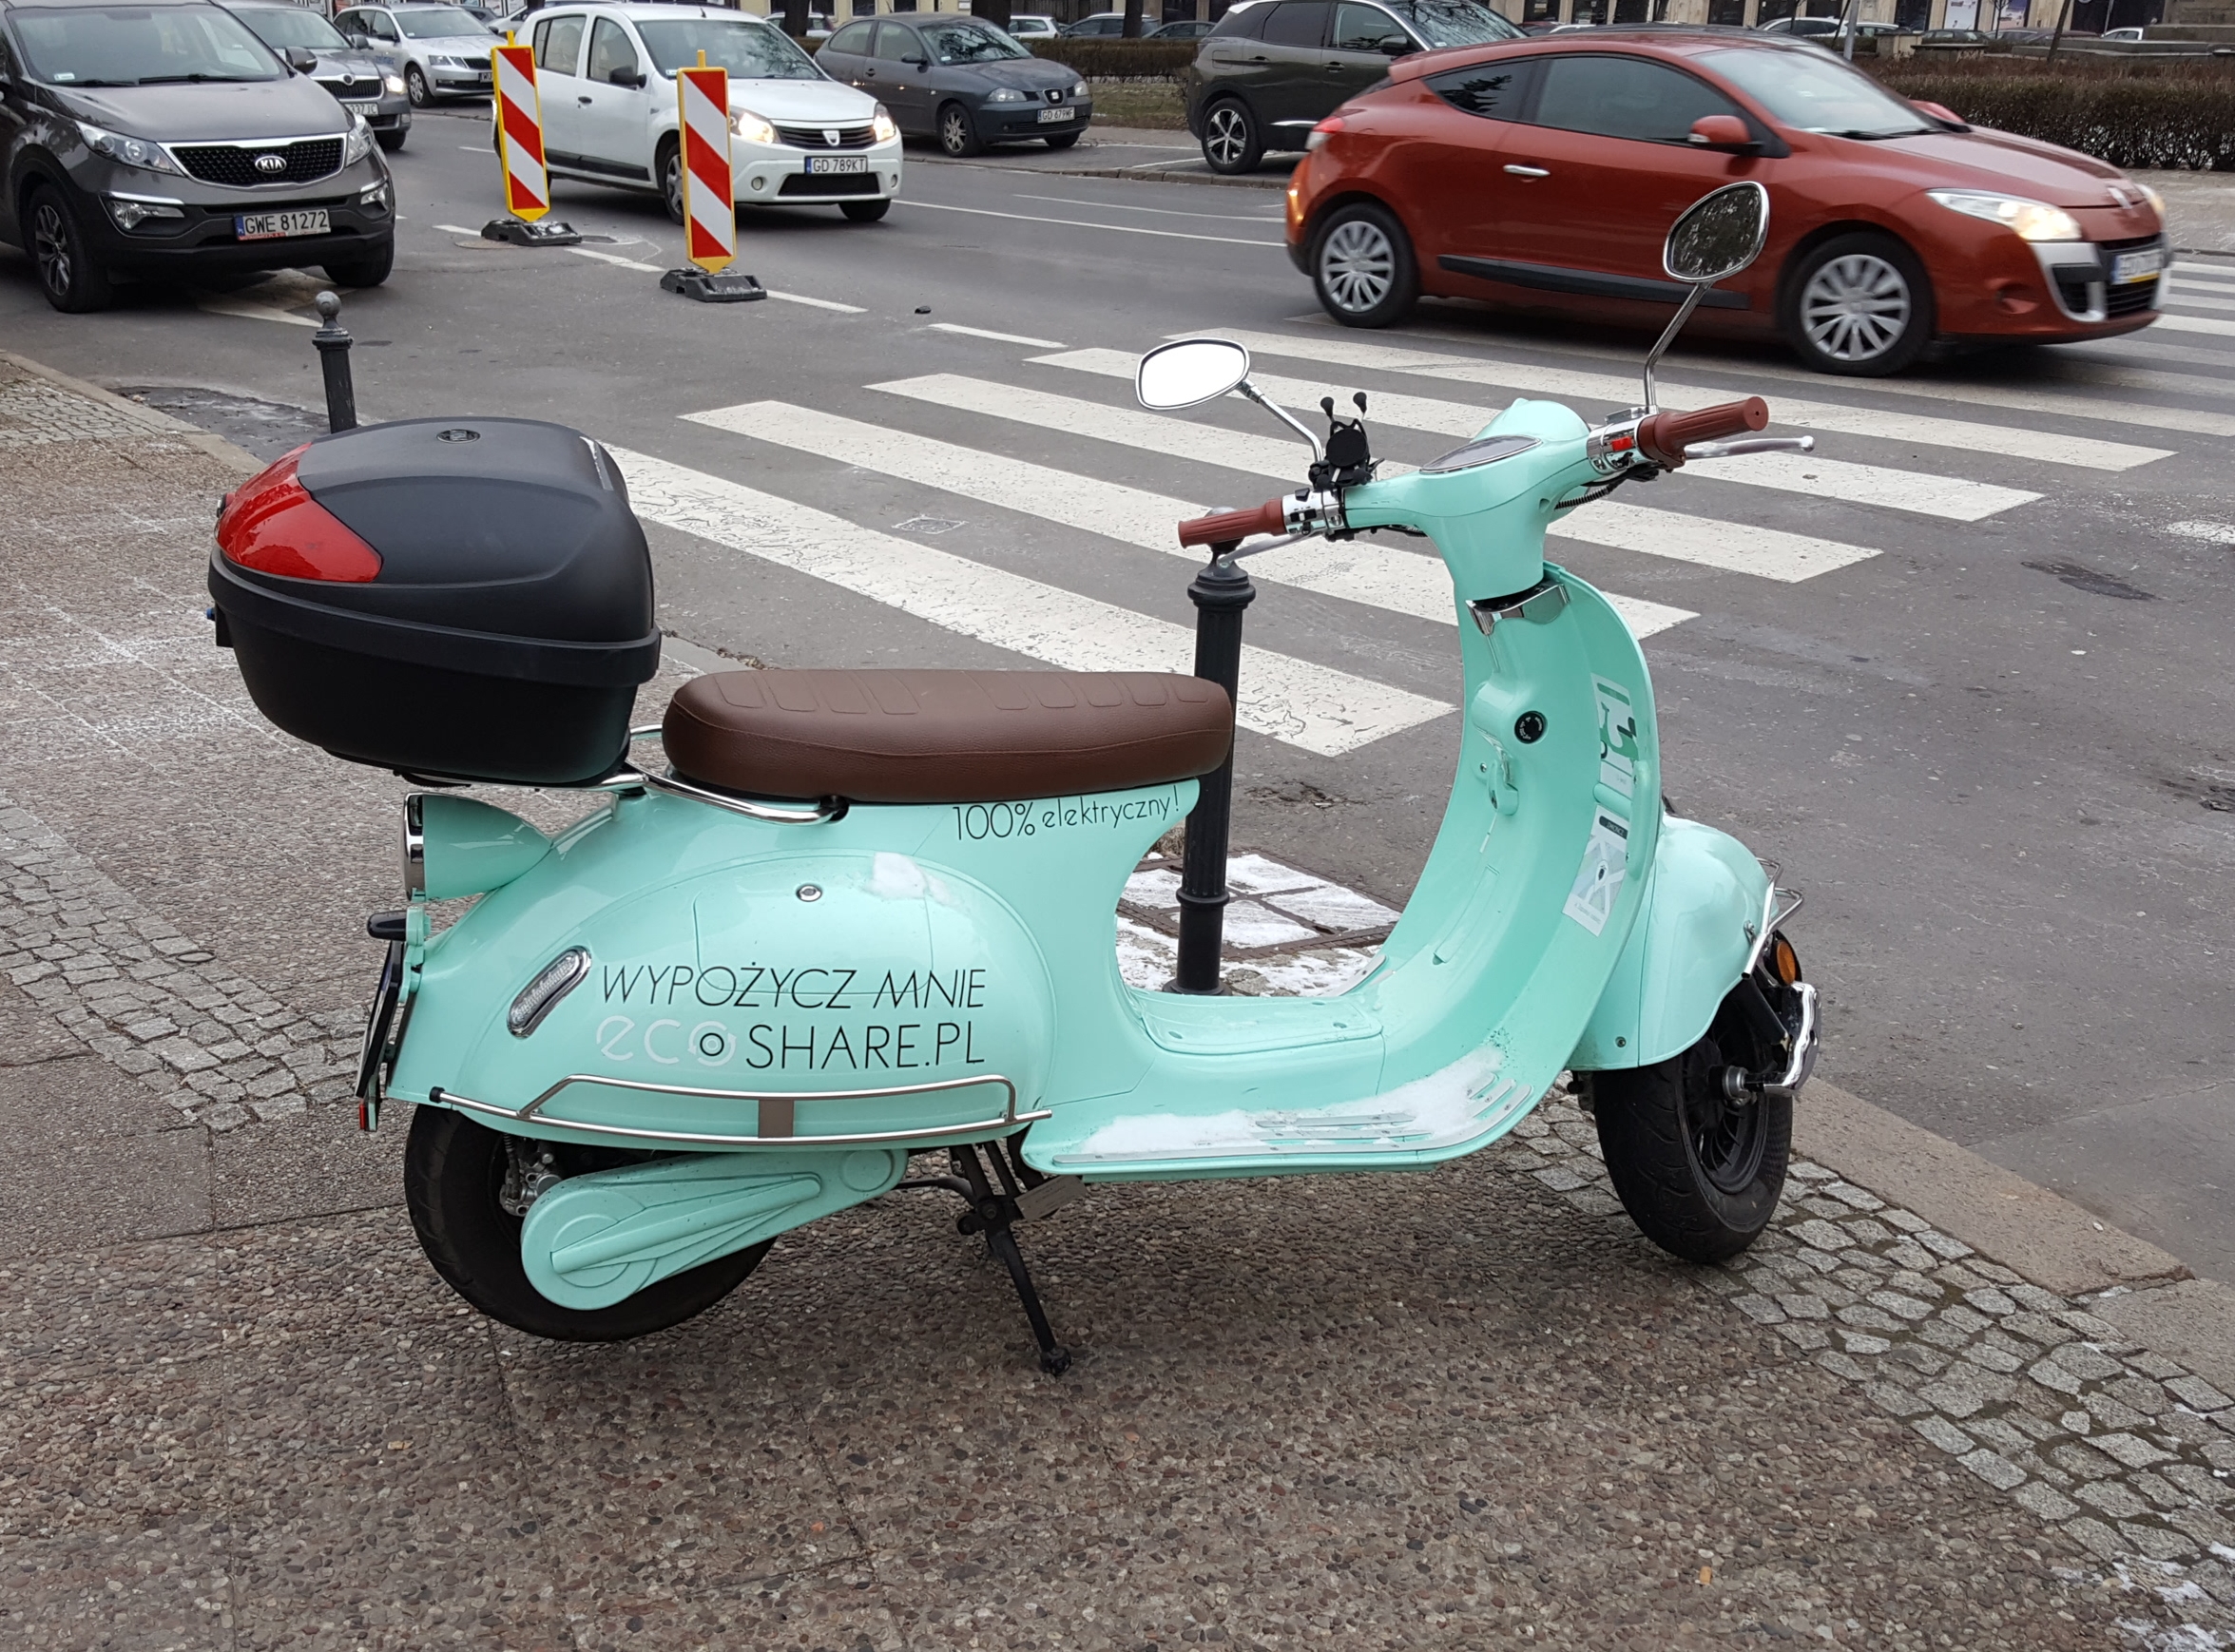 lærred Medicin Skærpe Car, motorbike and scooter sharing in Gdansk - Explore Gdansk